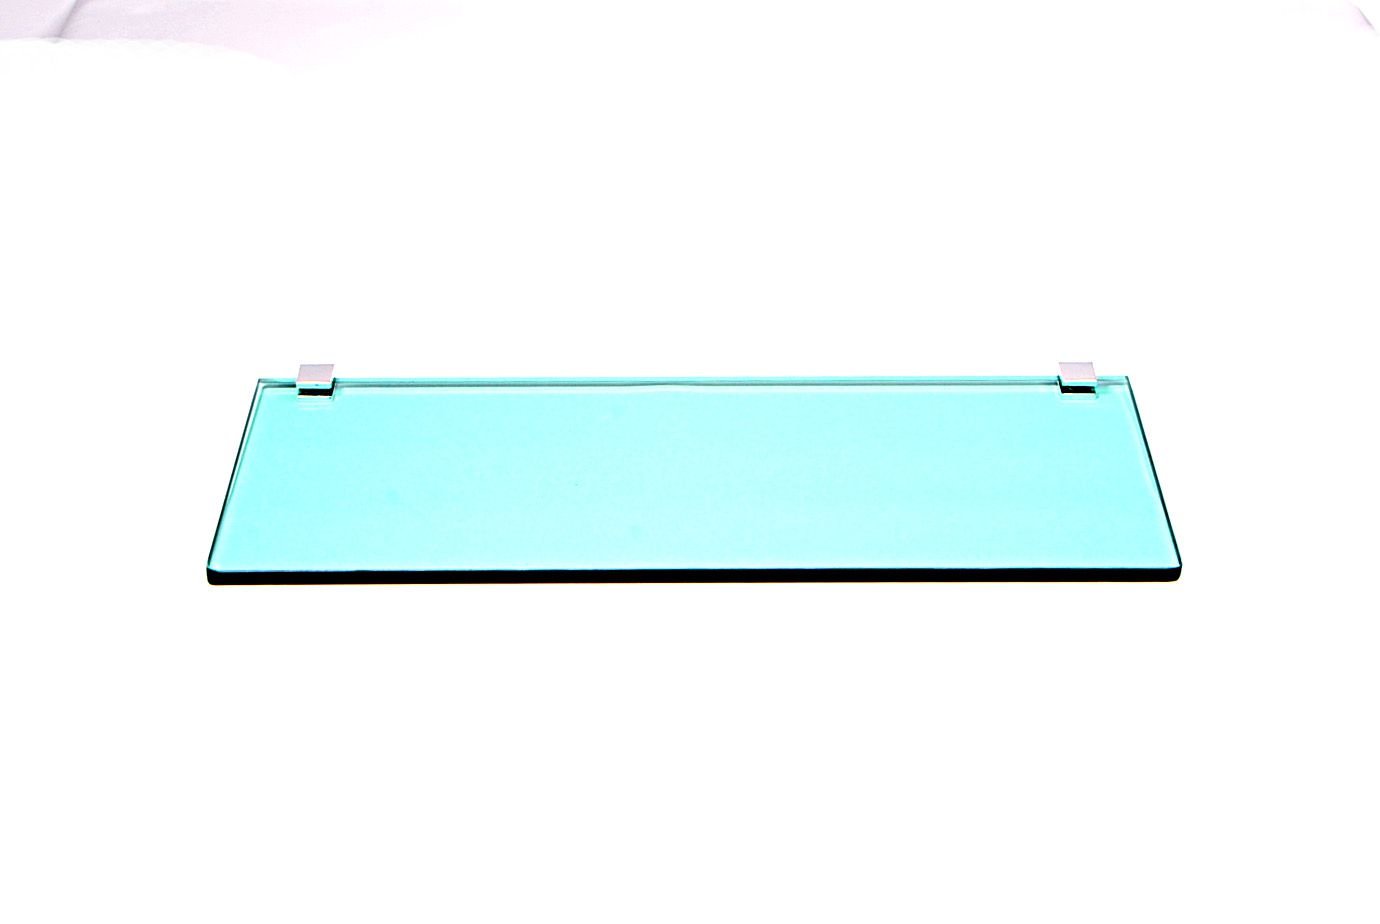 Porta Shampoo Reto em Vidro Verde Lapidado - Aquabox - 40cmx14cmx8mm